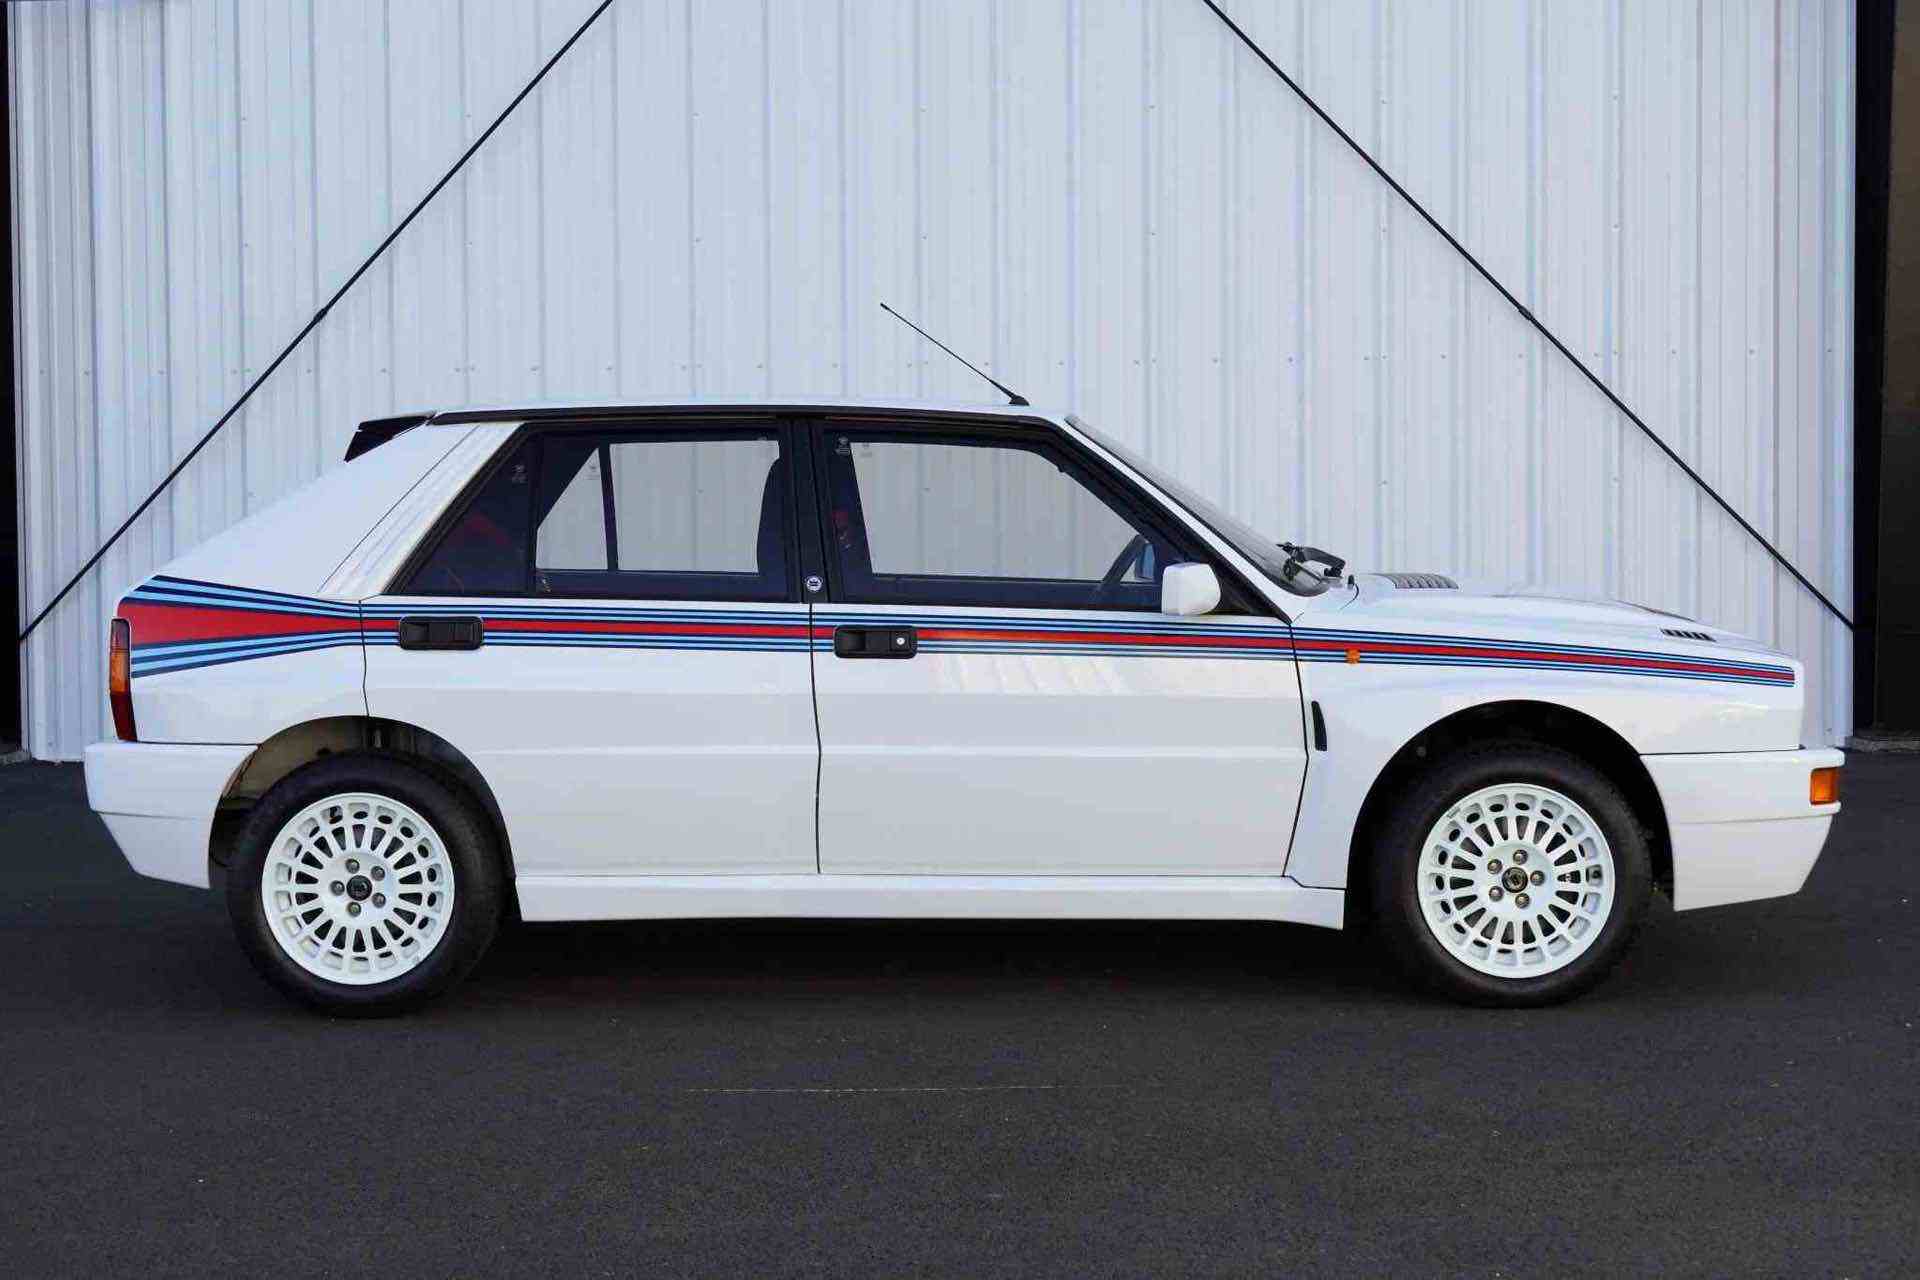 1992_Lancia_Delta_HF_Integrale_Evoluzione_Martini_5_auction-0002